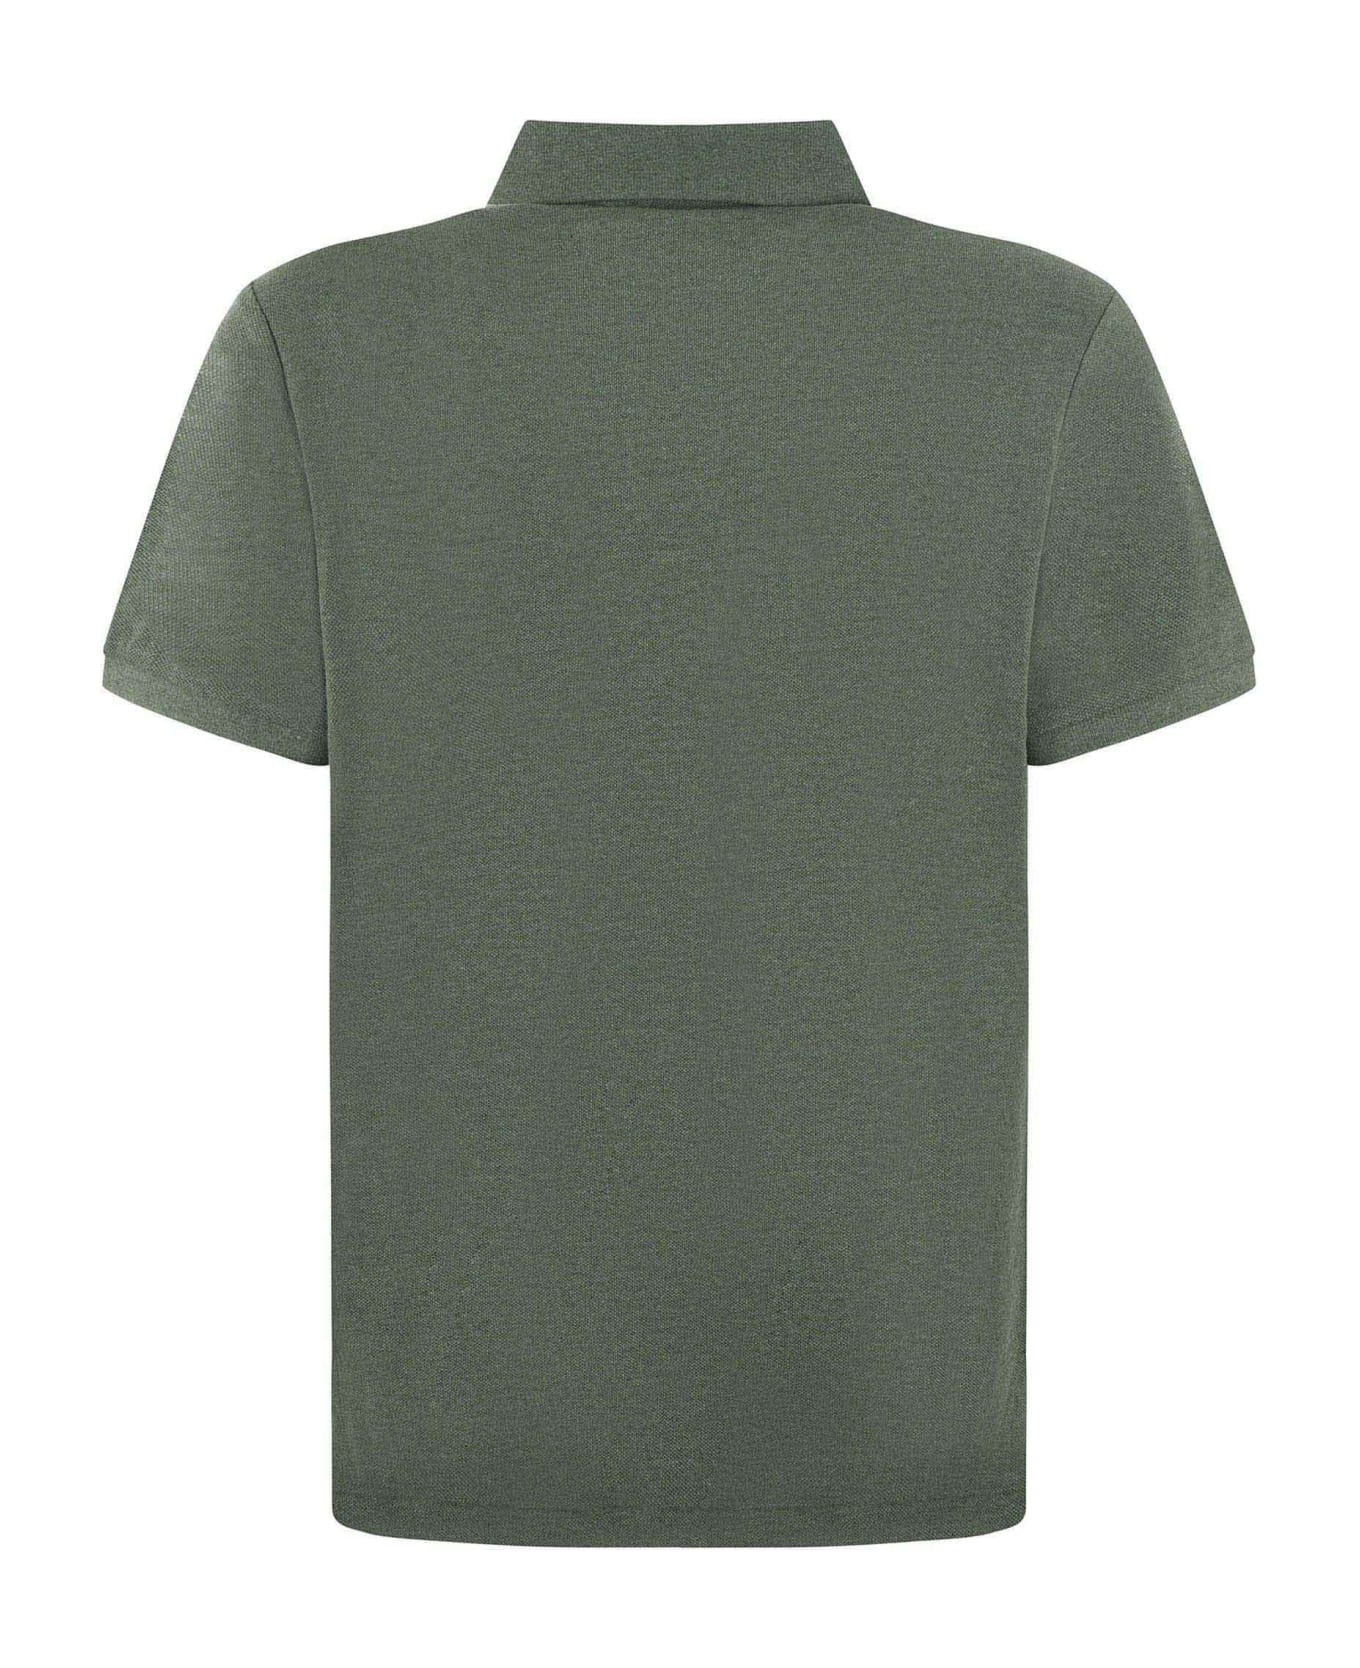 Polo Ralph Lauren "polo Ralph Lauren" Polo Shirt - Verde militare ポロシャツ